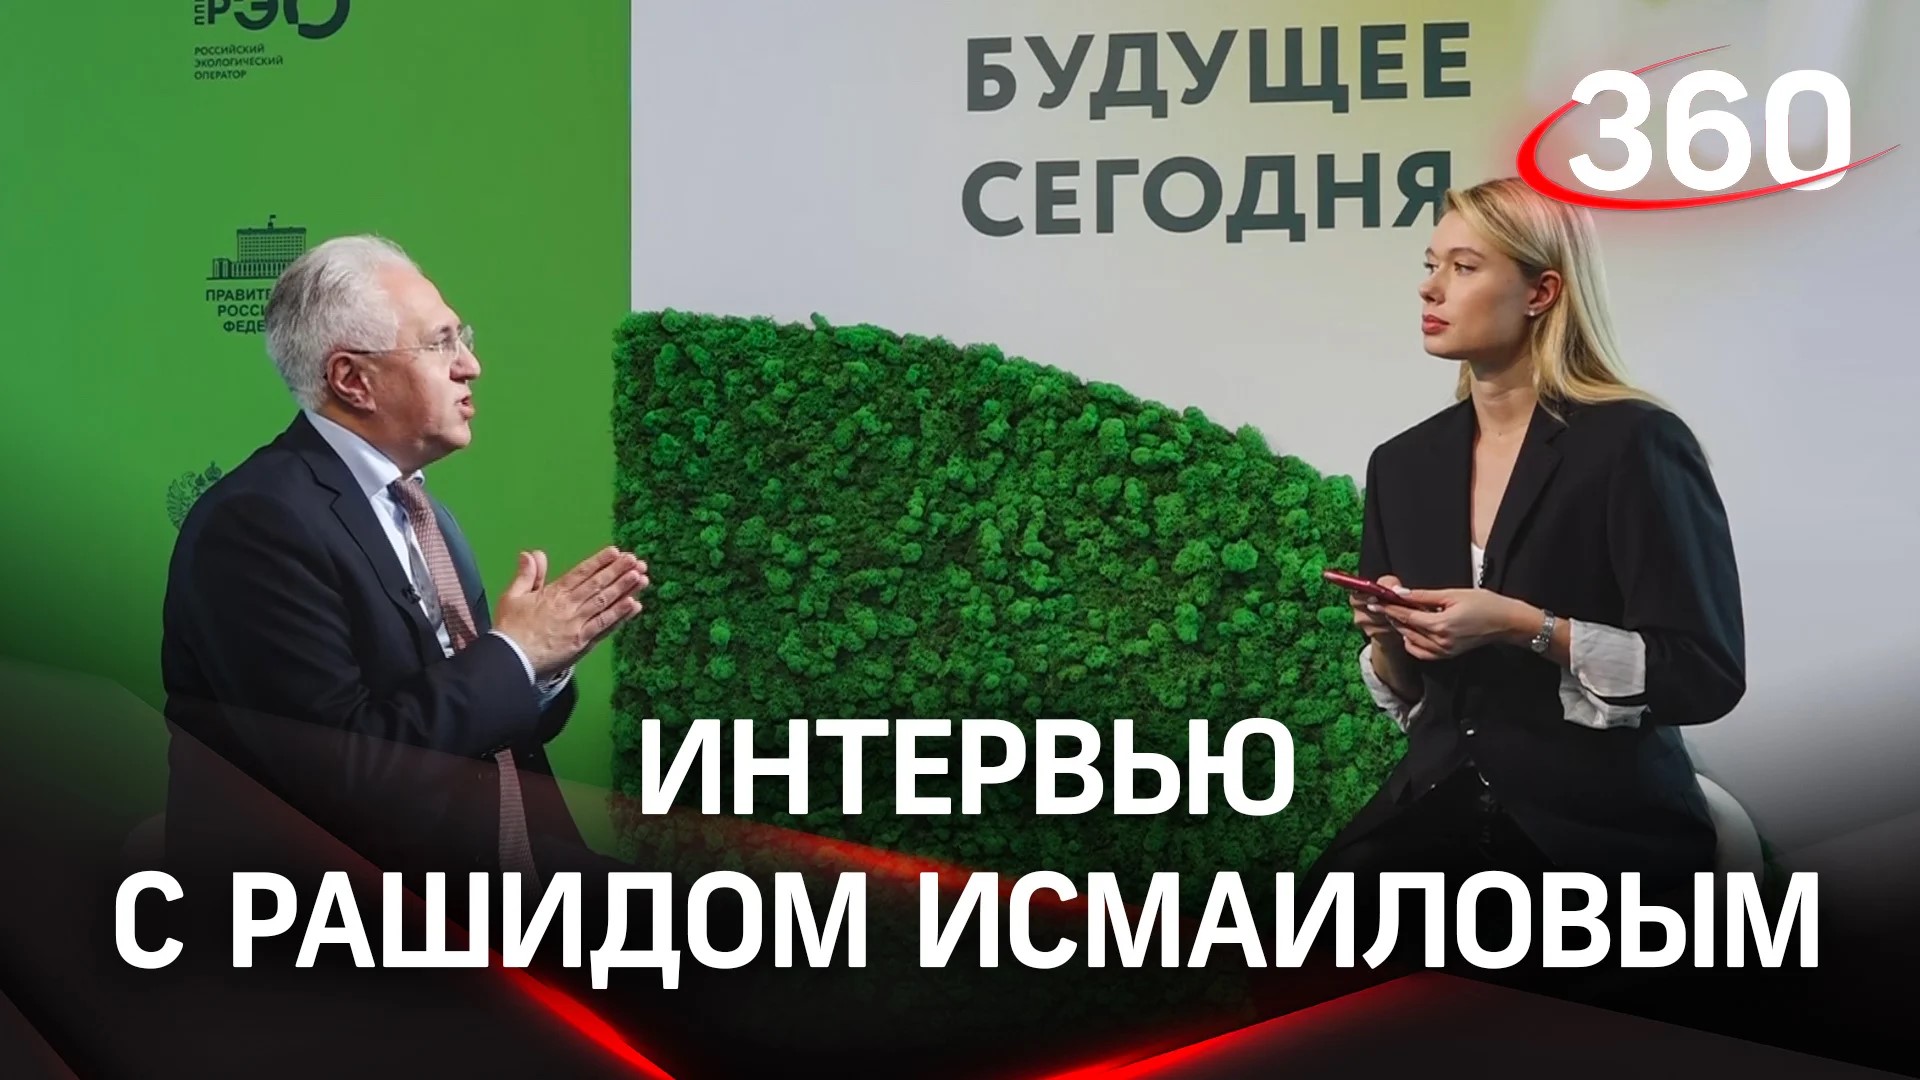 Рашид Исмаилов дал интервью телекомпании 360 по итогам работы на Российском экологическом форуме